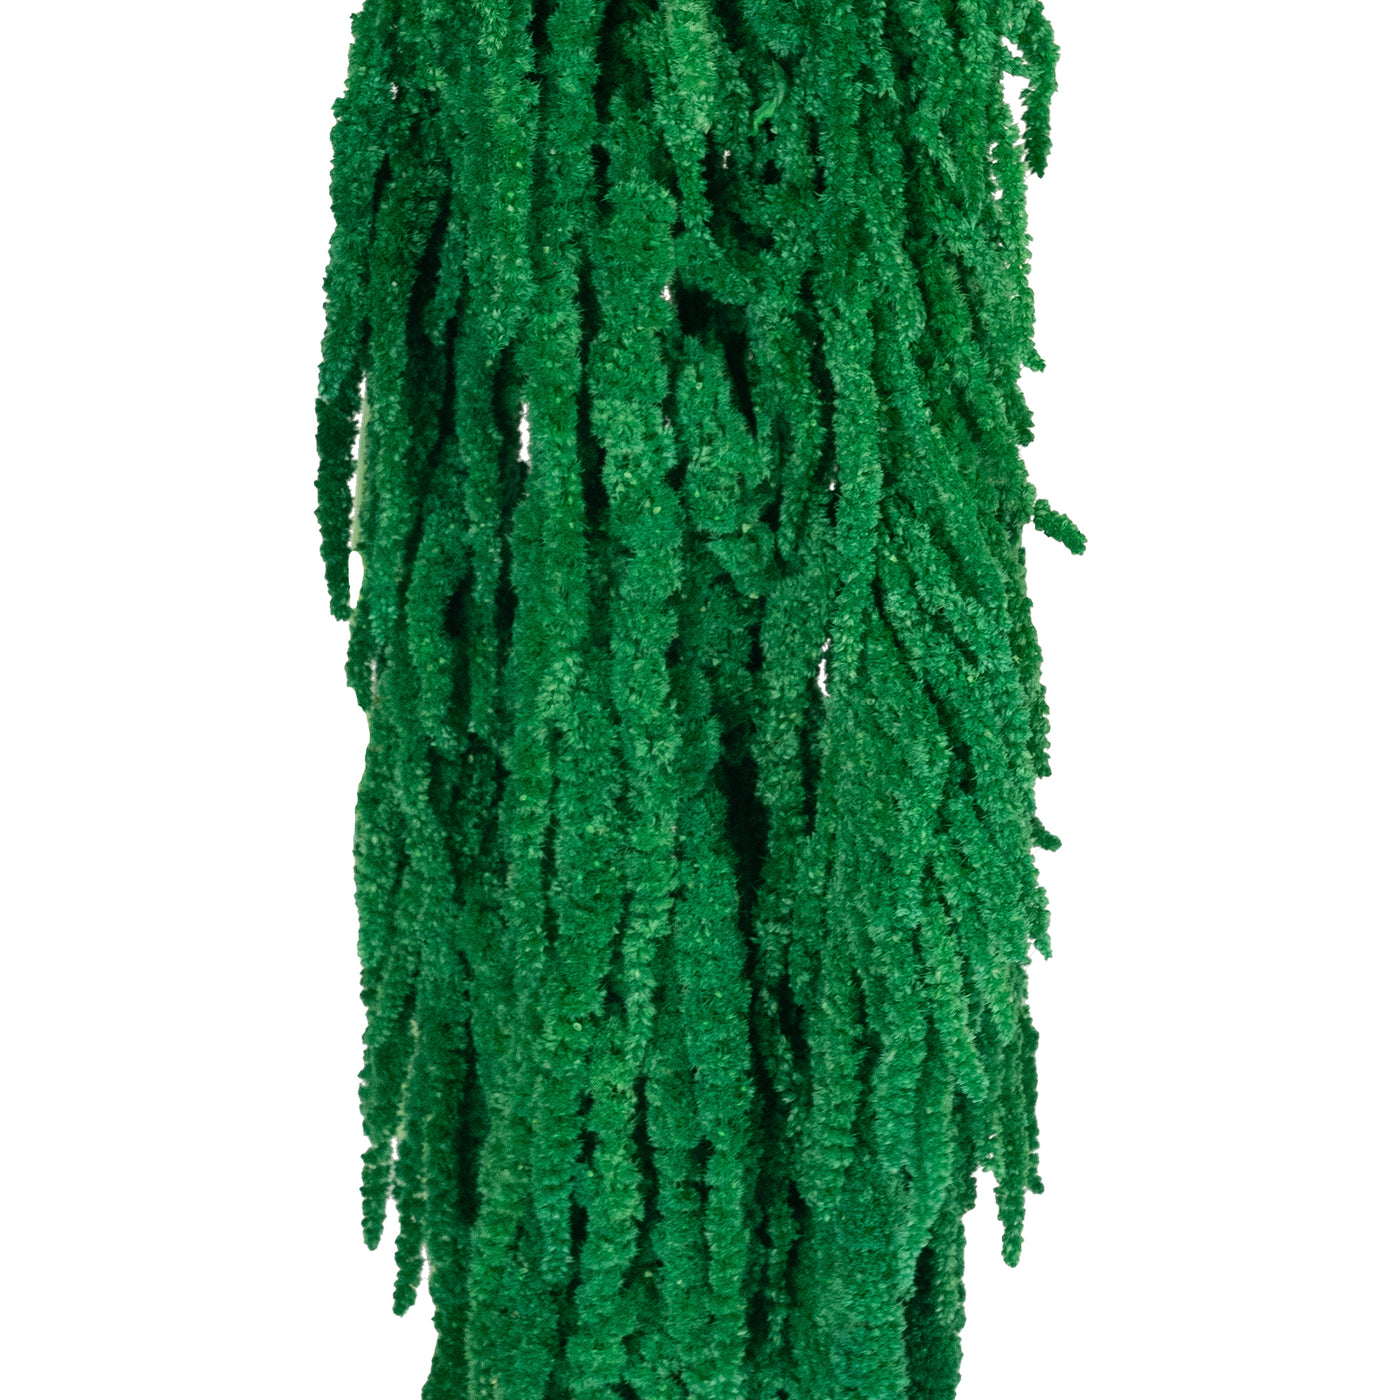 Crenguta conservata de Amaranthus H70-80 cm. verde smarald RR2